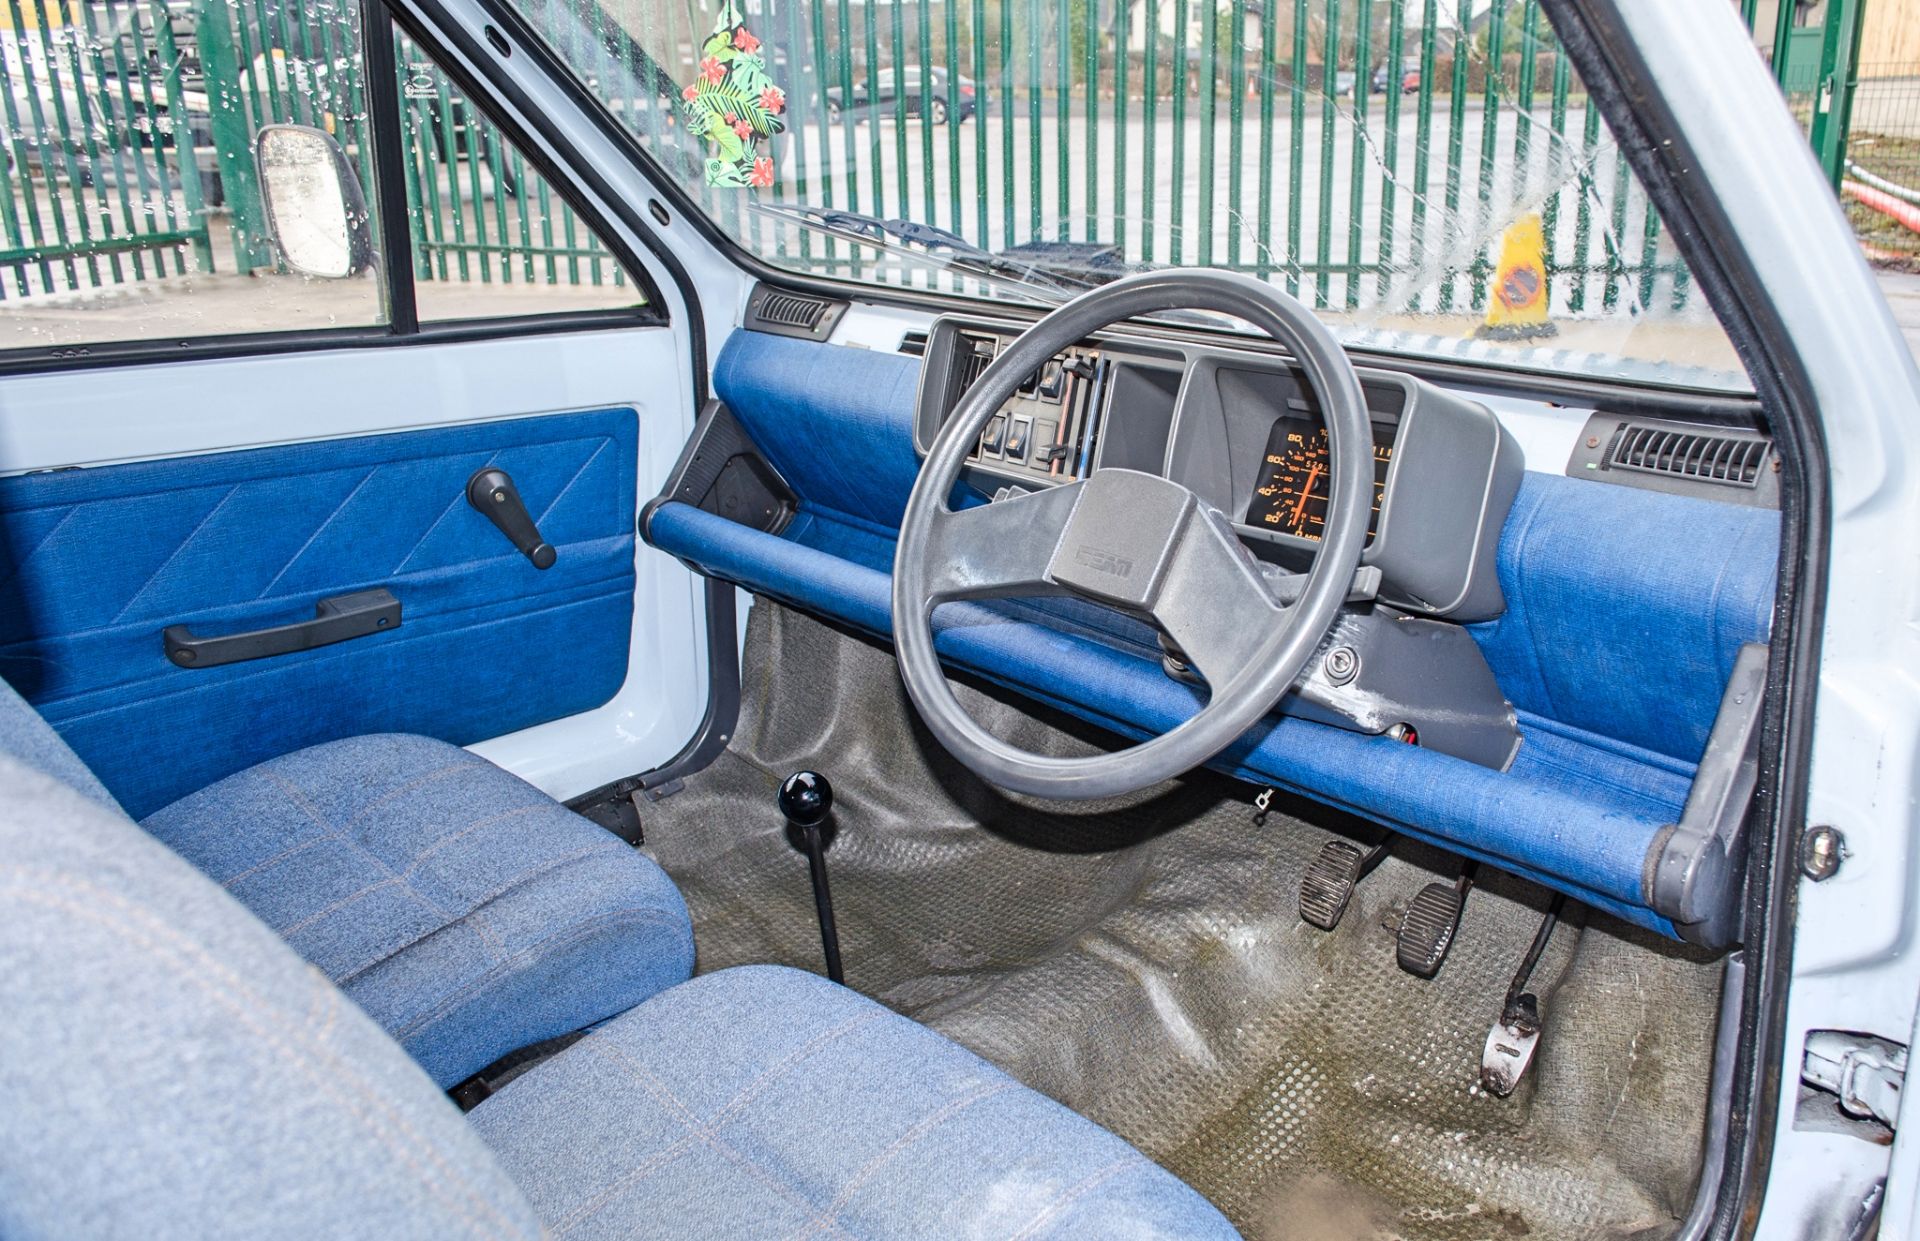 1990 Seat Terra 903cc 2 berth Danbury Motor Caravan - Image 31 of 53